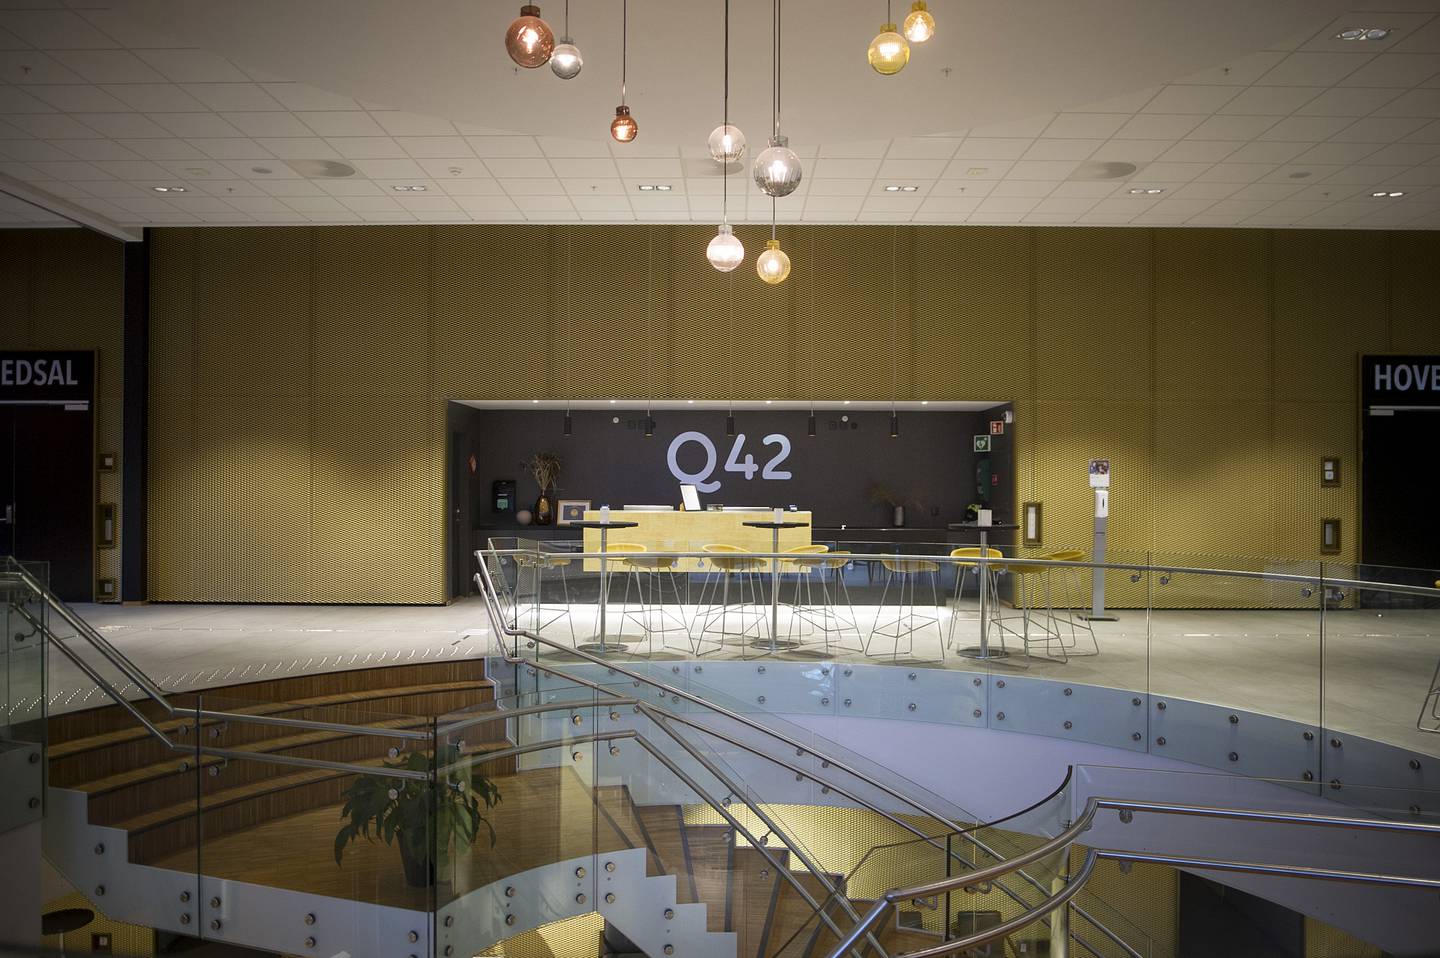 Q42 i Kristiansand sentrum eies av pinsemenigheten Filadelfia Kristiansand og sto klar i 2016. Bygget er Sørlandets største konferansesenter med 1.400 sitteplasser i hovedsalen. Dette brukes av menigheten, i tillegg til at det leies ut gjennom selskapet Kristiansand Kongressenter AS. Inneholder også blant annet restaurant, hotellrom og leilighet.